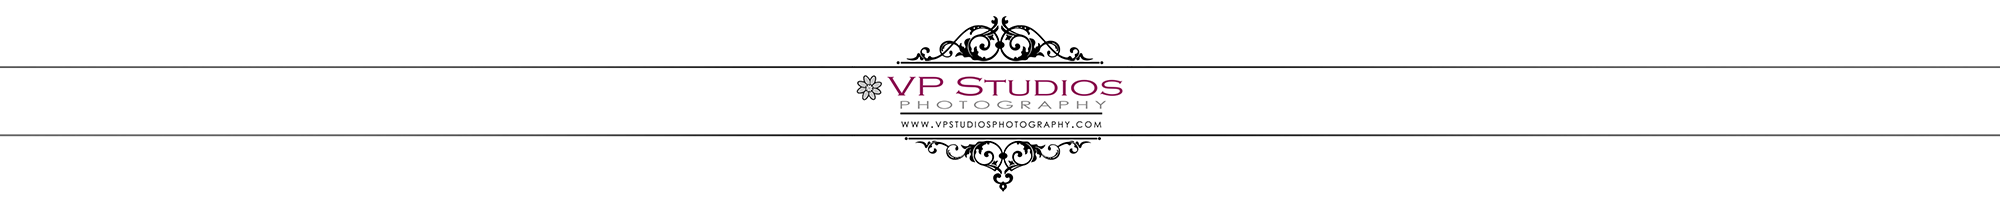 VP Studios Photography - Burlington  Wedding Photographer serving Oakville, Toronto, Cambridge, Ancaster, Niagara and the GTA.